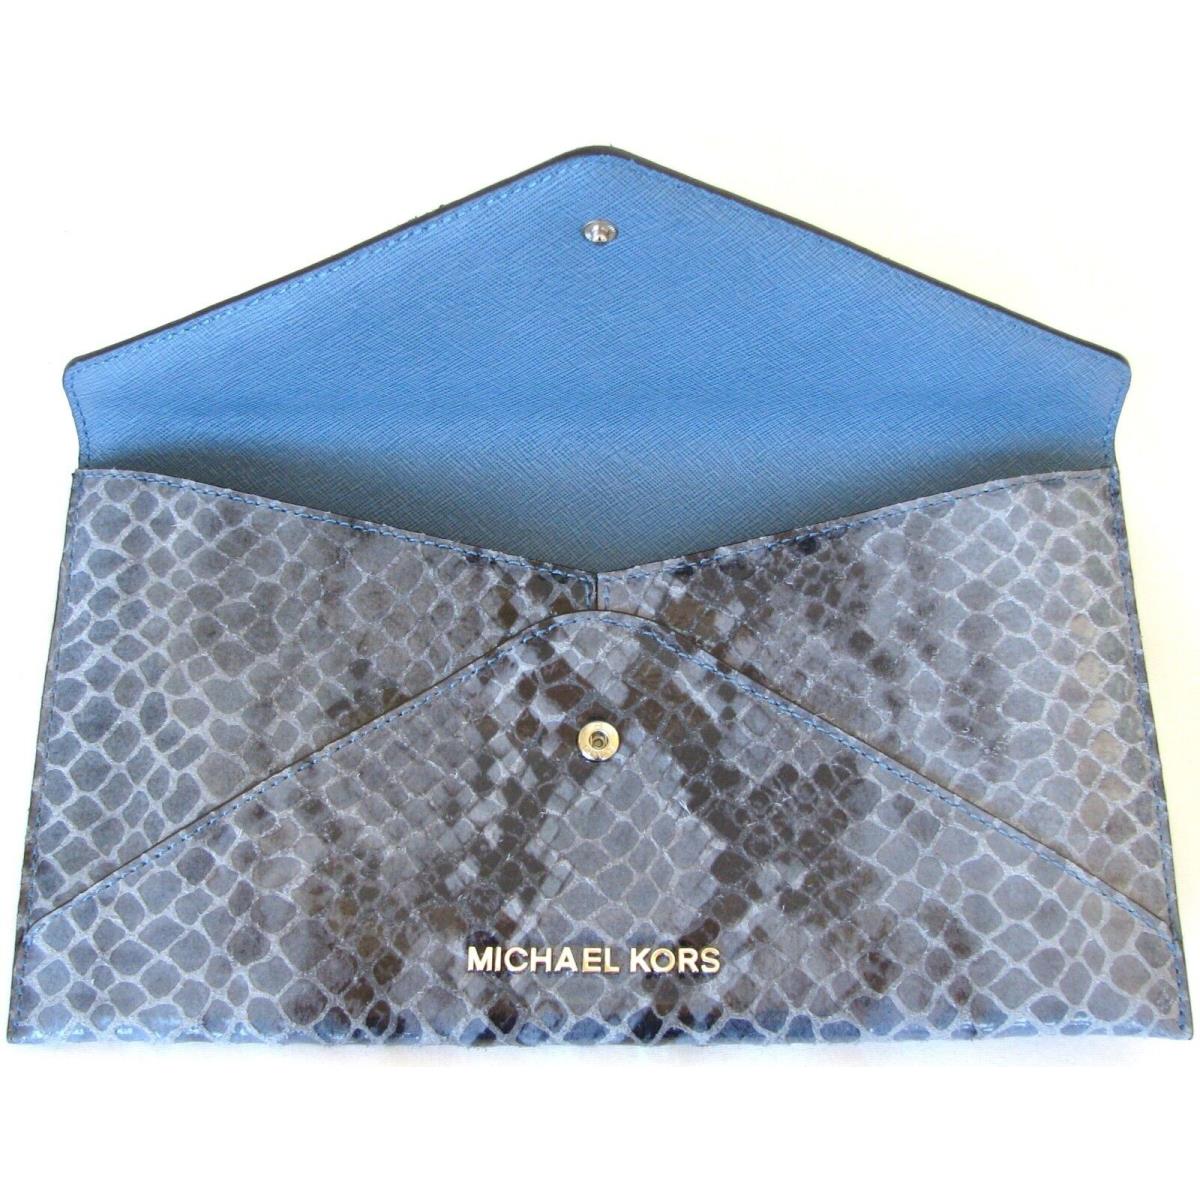 Michael Kors Jet Set Travel Denim Blue Leather Large Jewel Envelope Clutch Bag